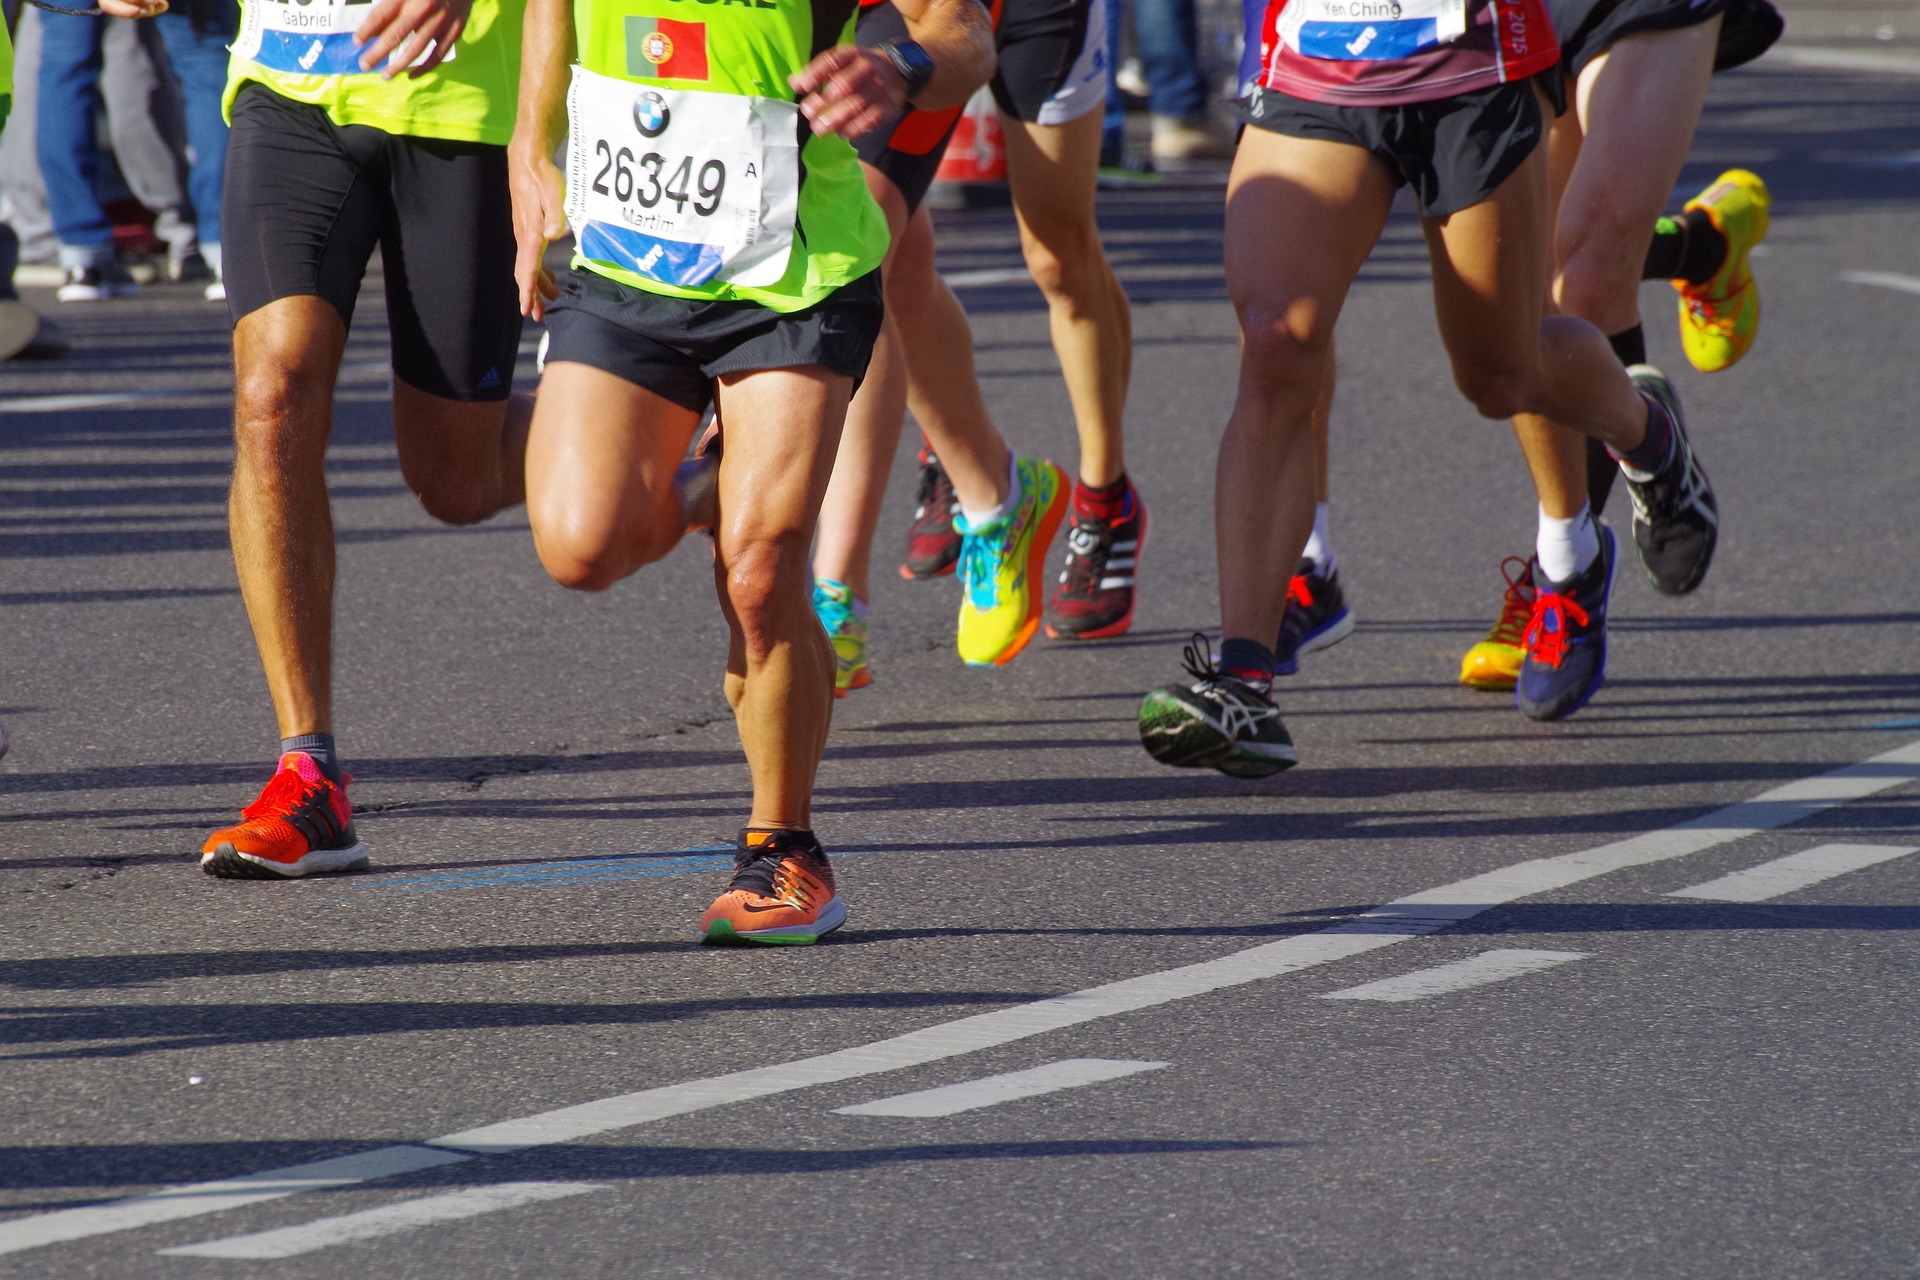 Wrocław Marathon